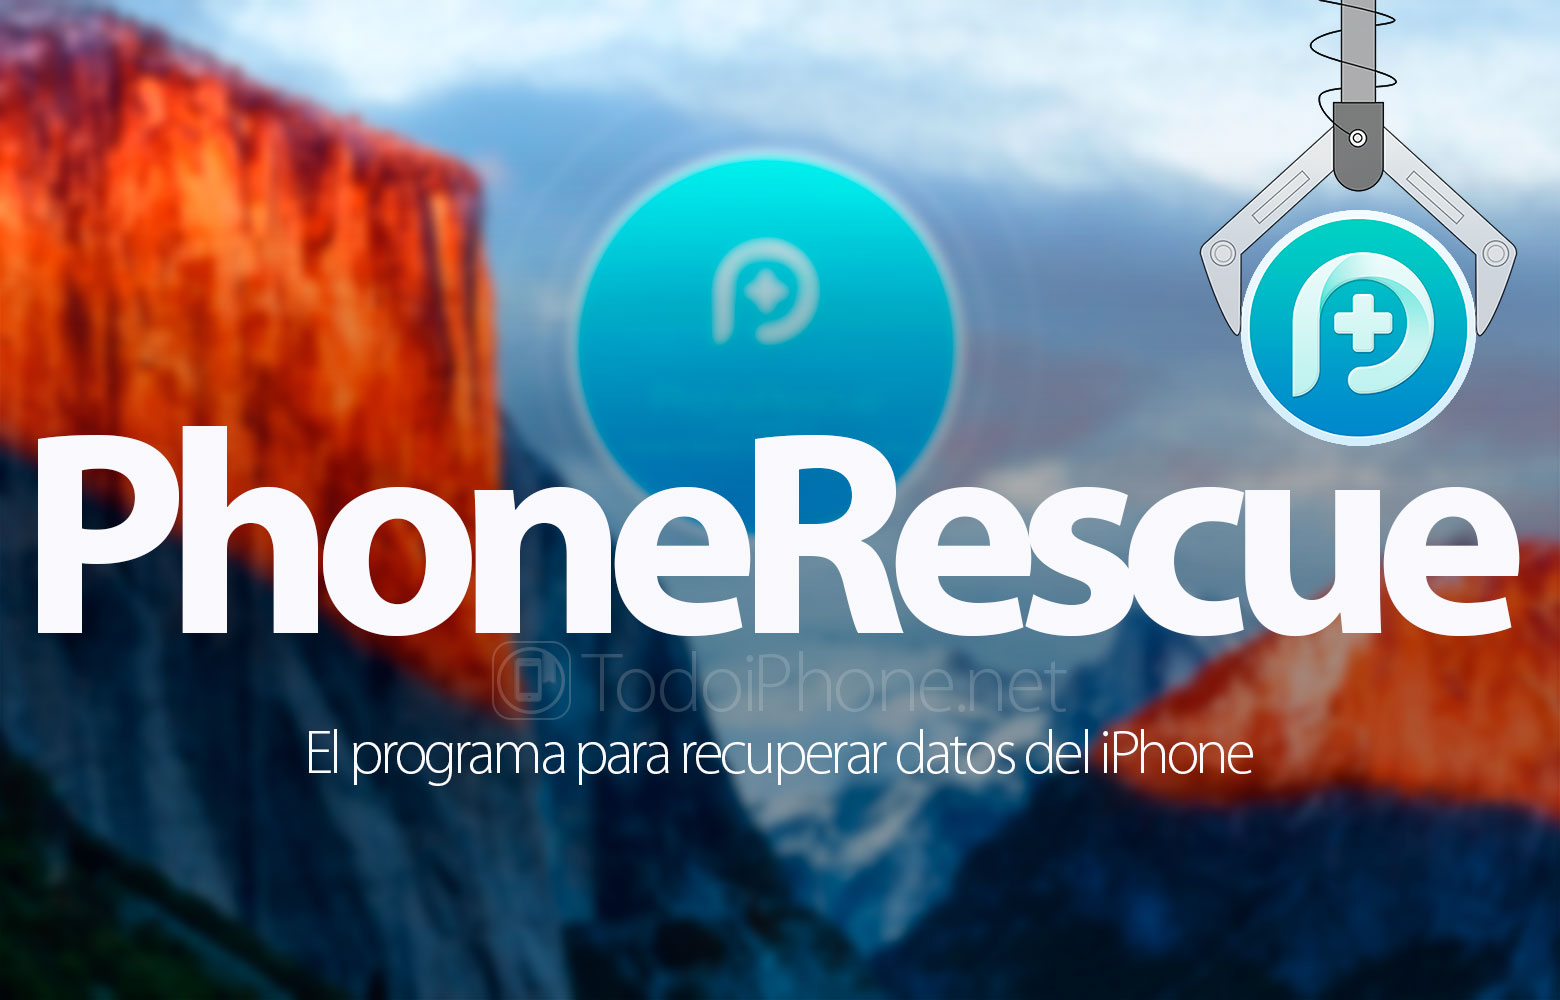 phonerescue-app-recuperar-datos-iphone